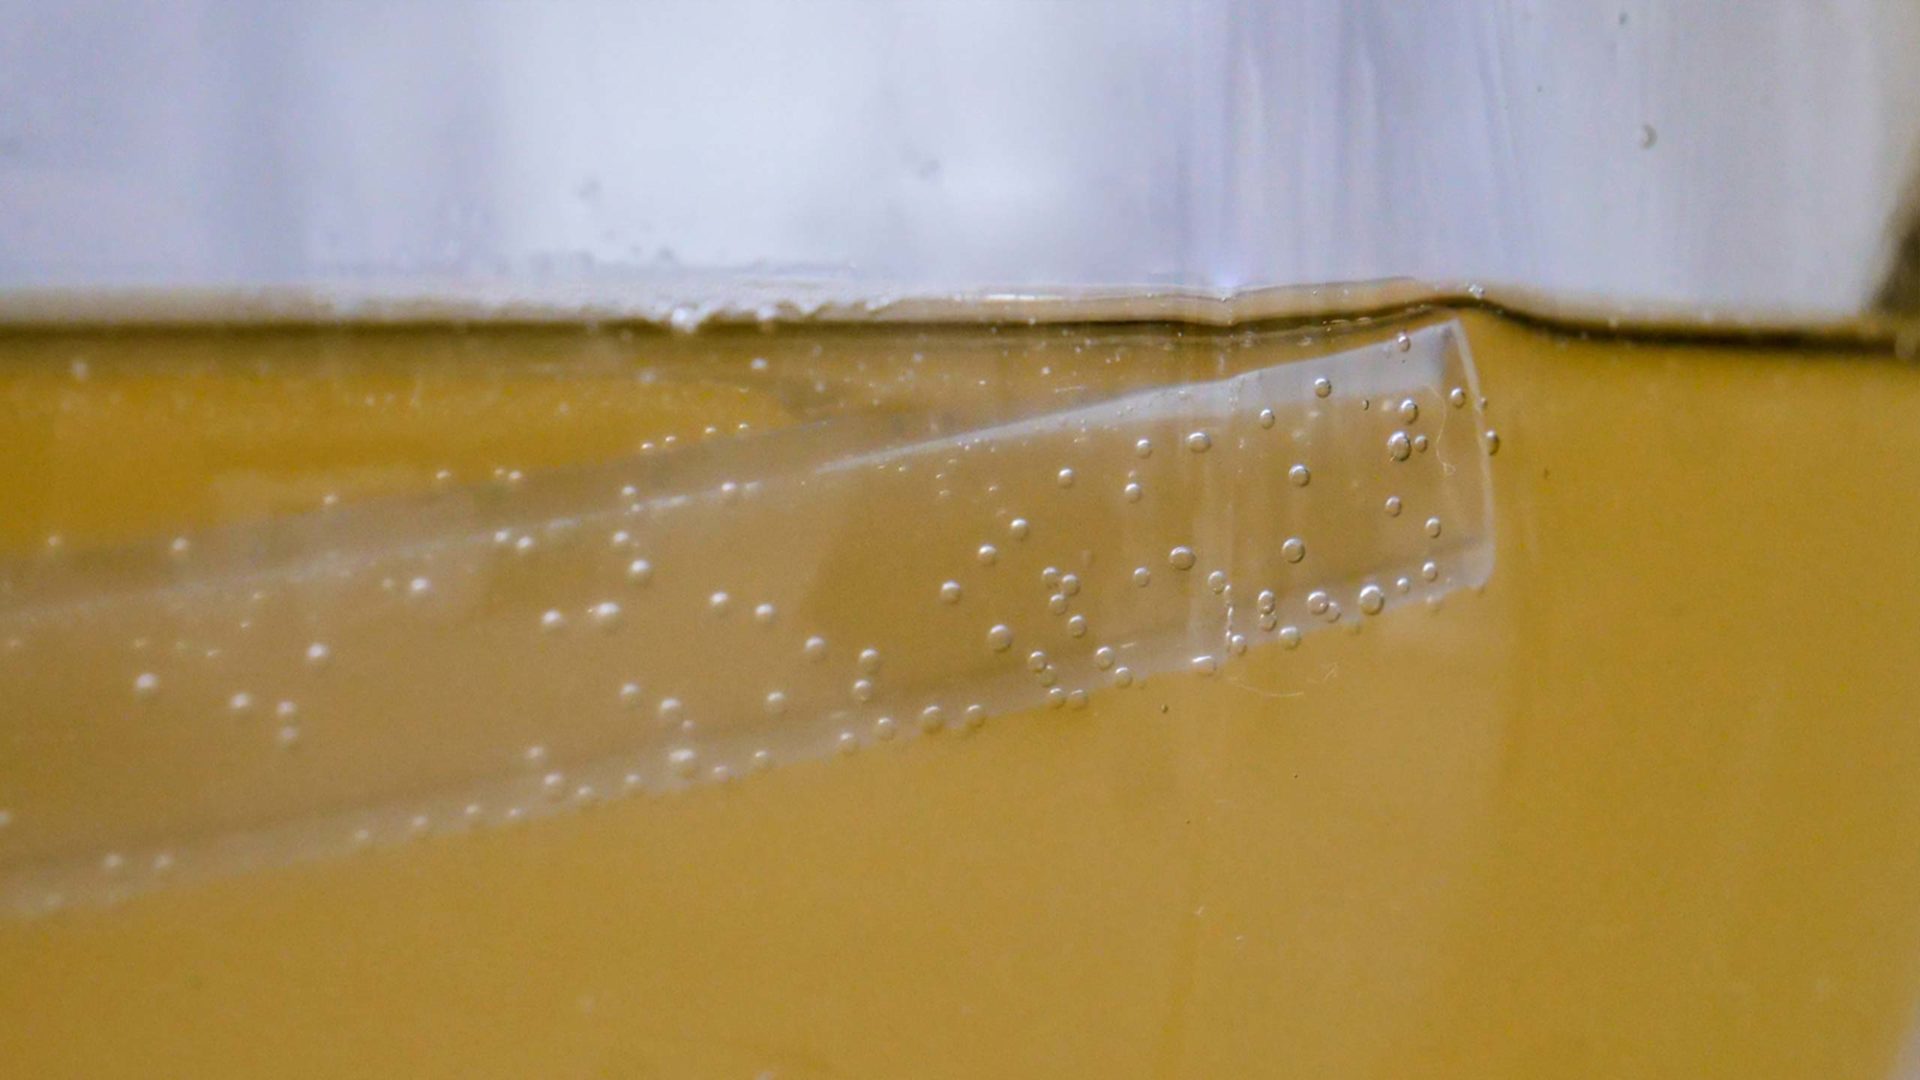 Honey wine - PVC hose in mead liquid